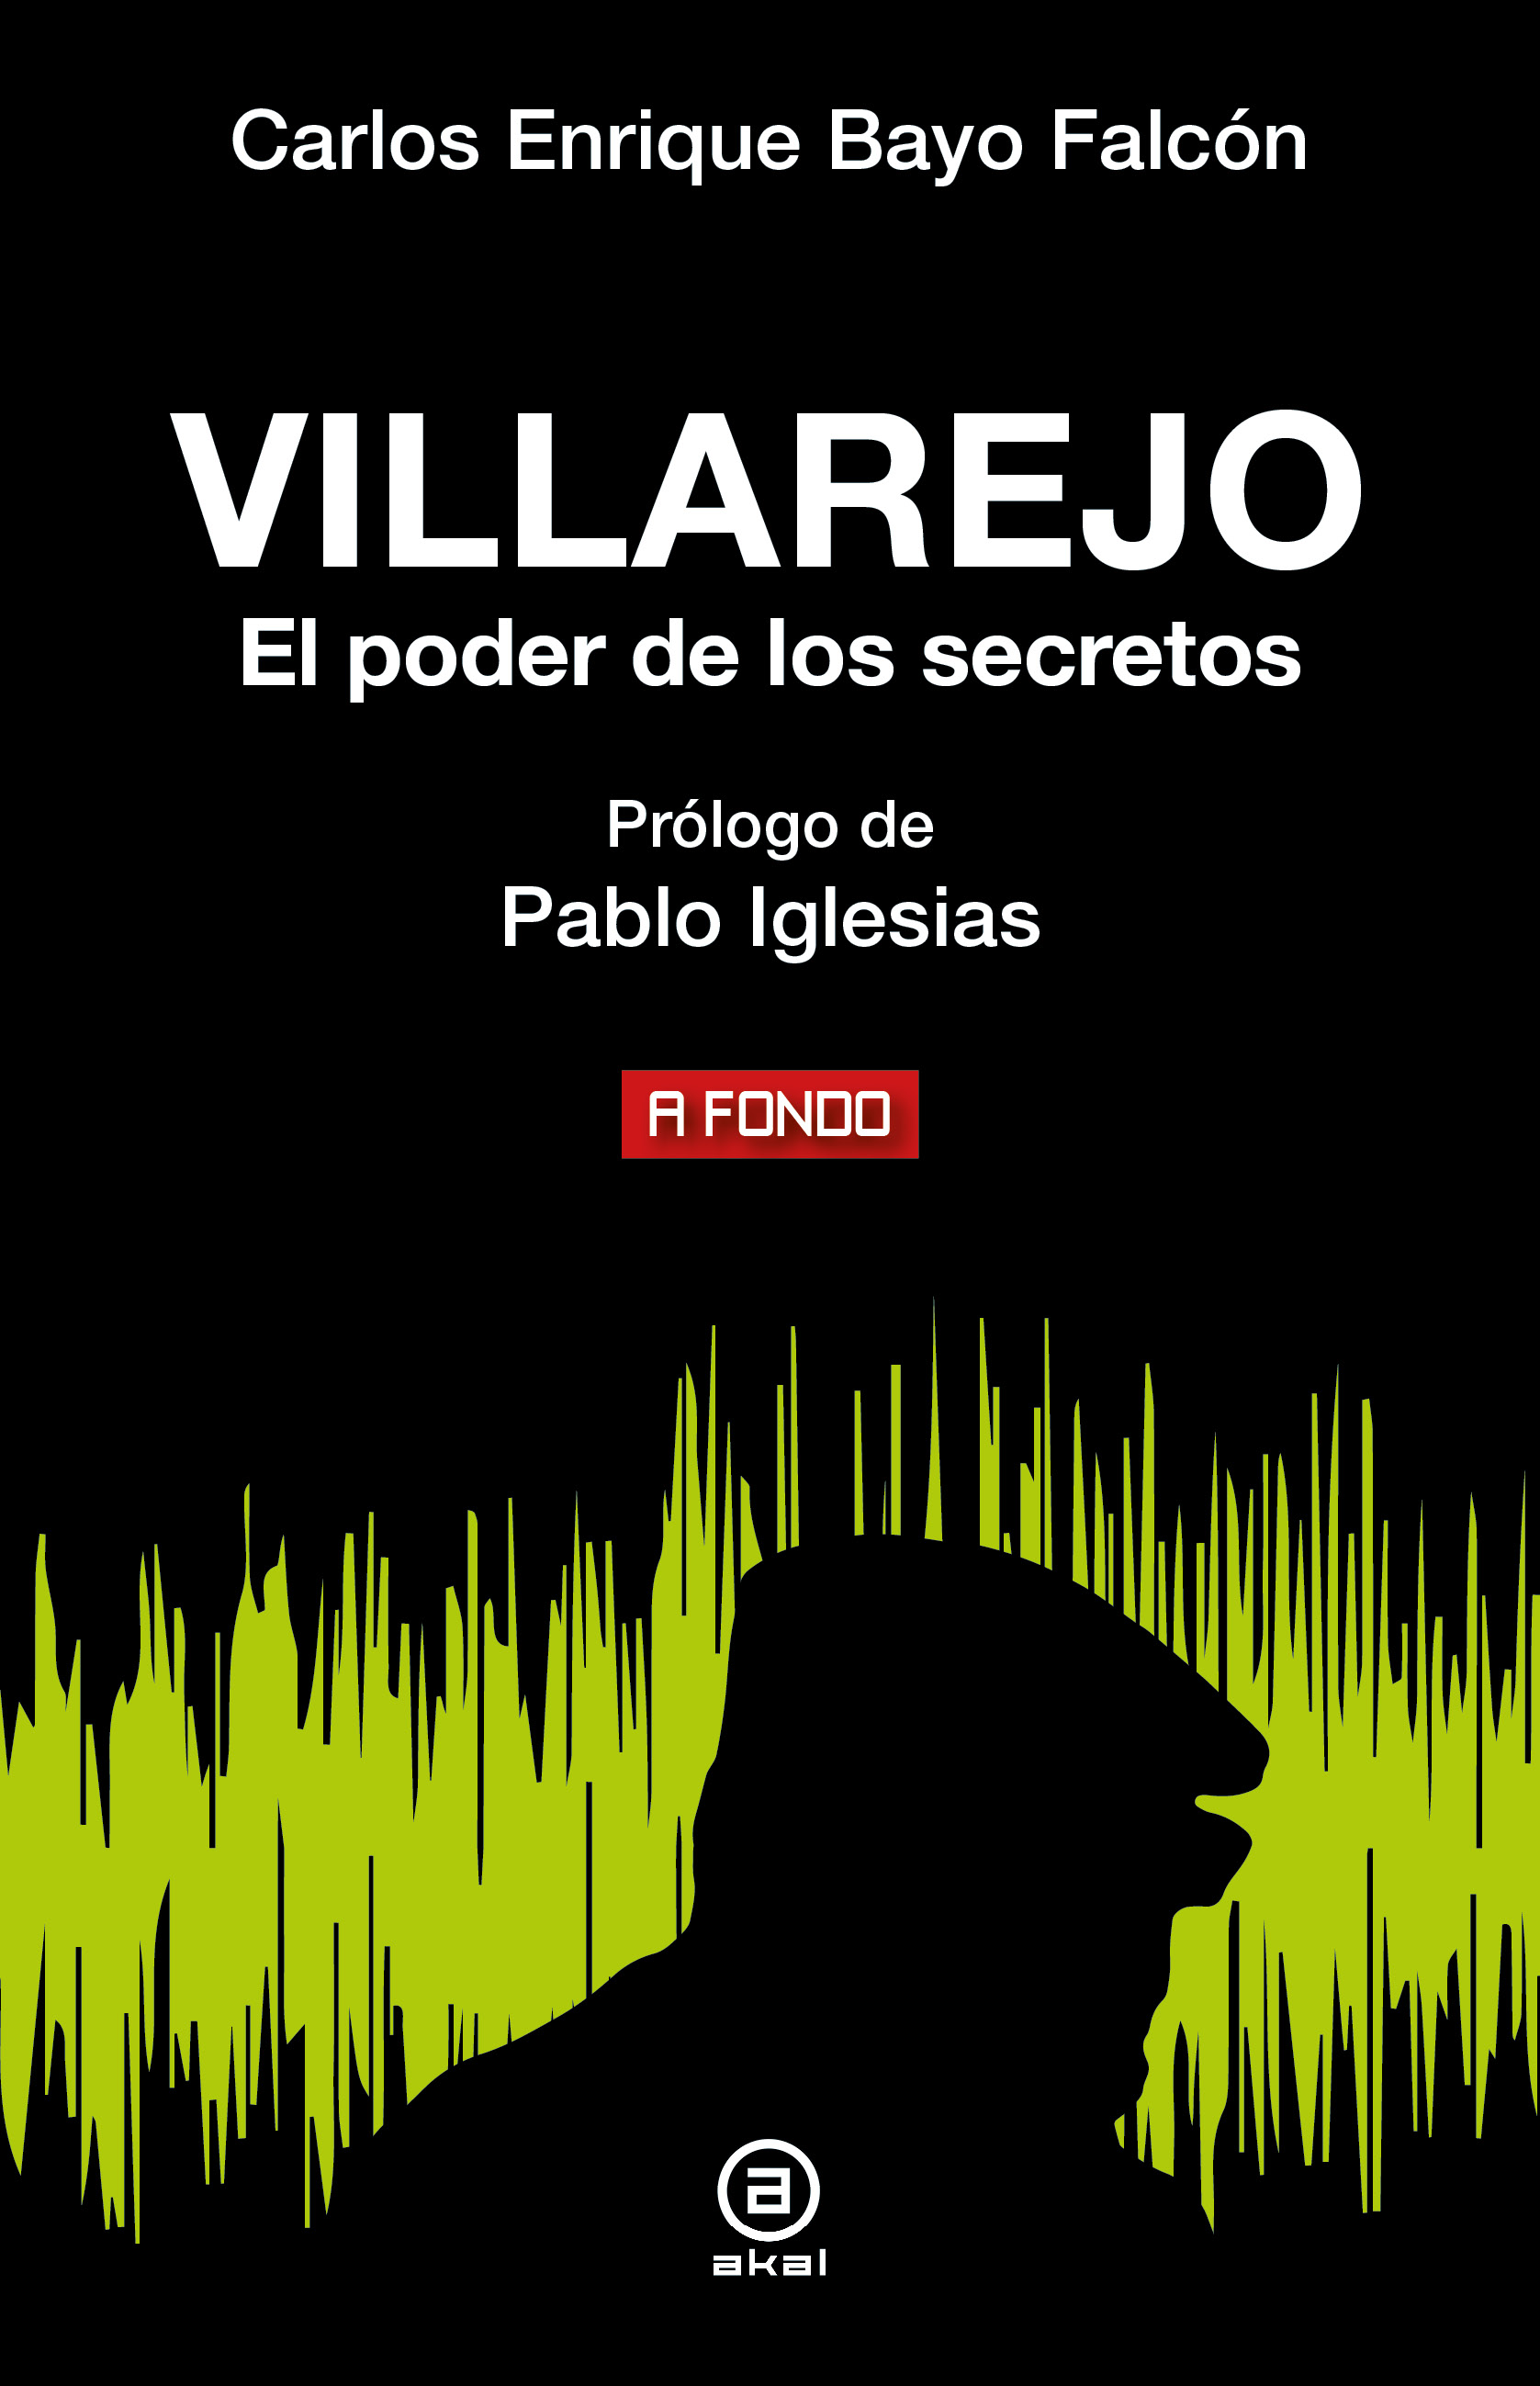 VILLAREJO - Carlos Enrique Bayo Falcón